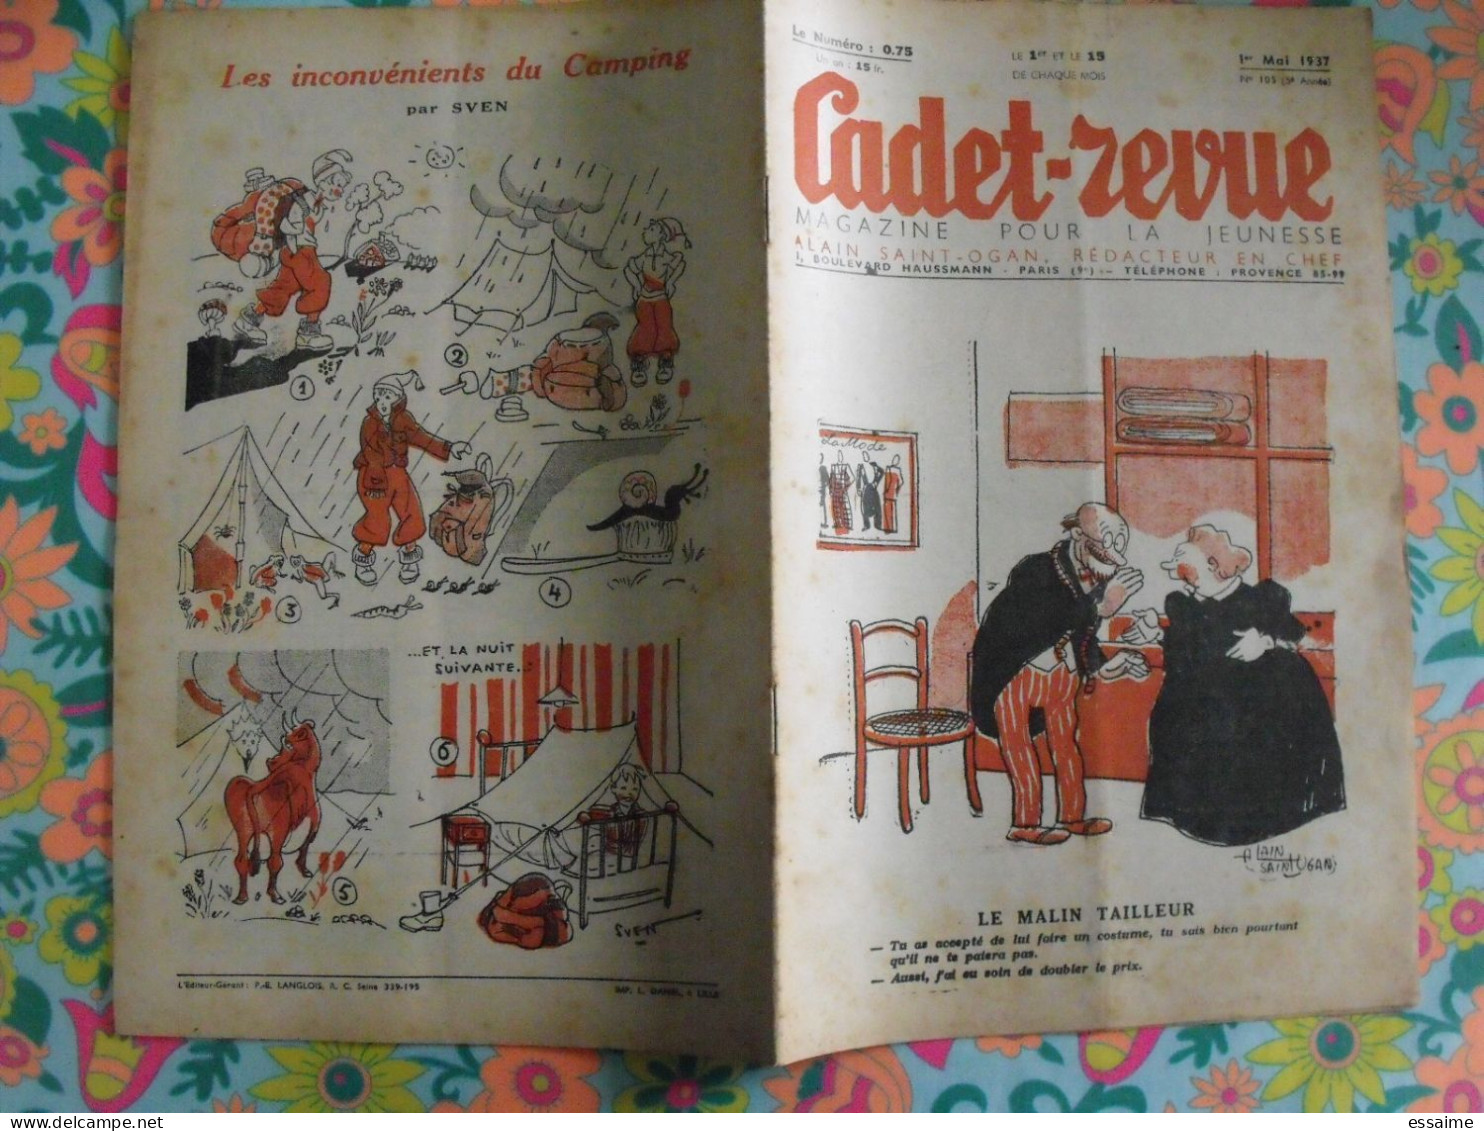 Cadet-Revue N° 105 De 1937, BD. Magazine Pour La Jeunesse. Alain Saint-Ogan. Mitou - Humour